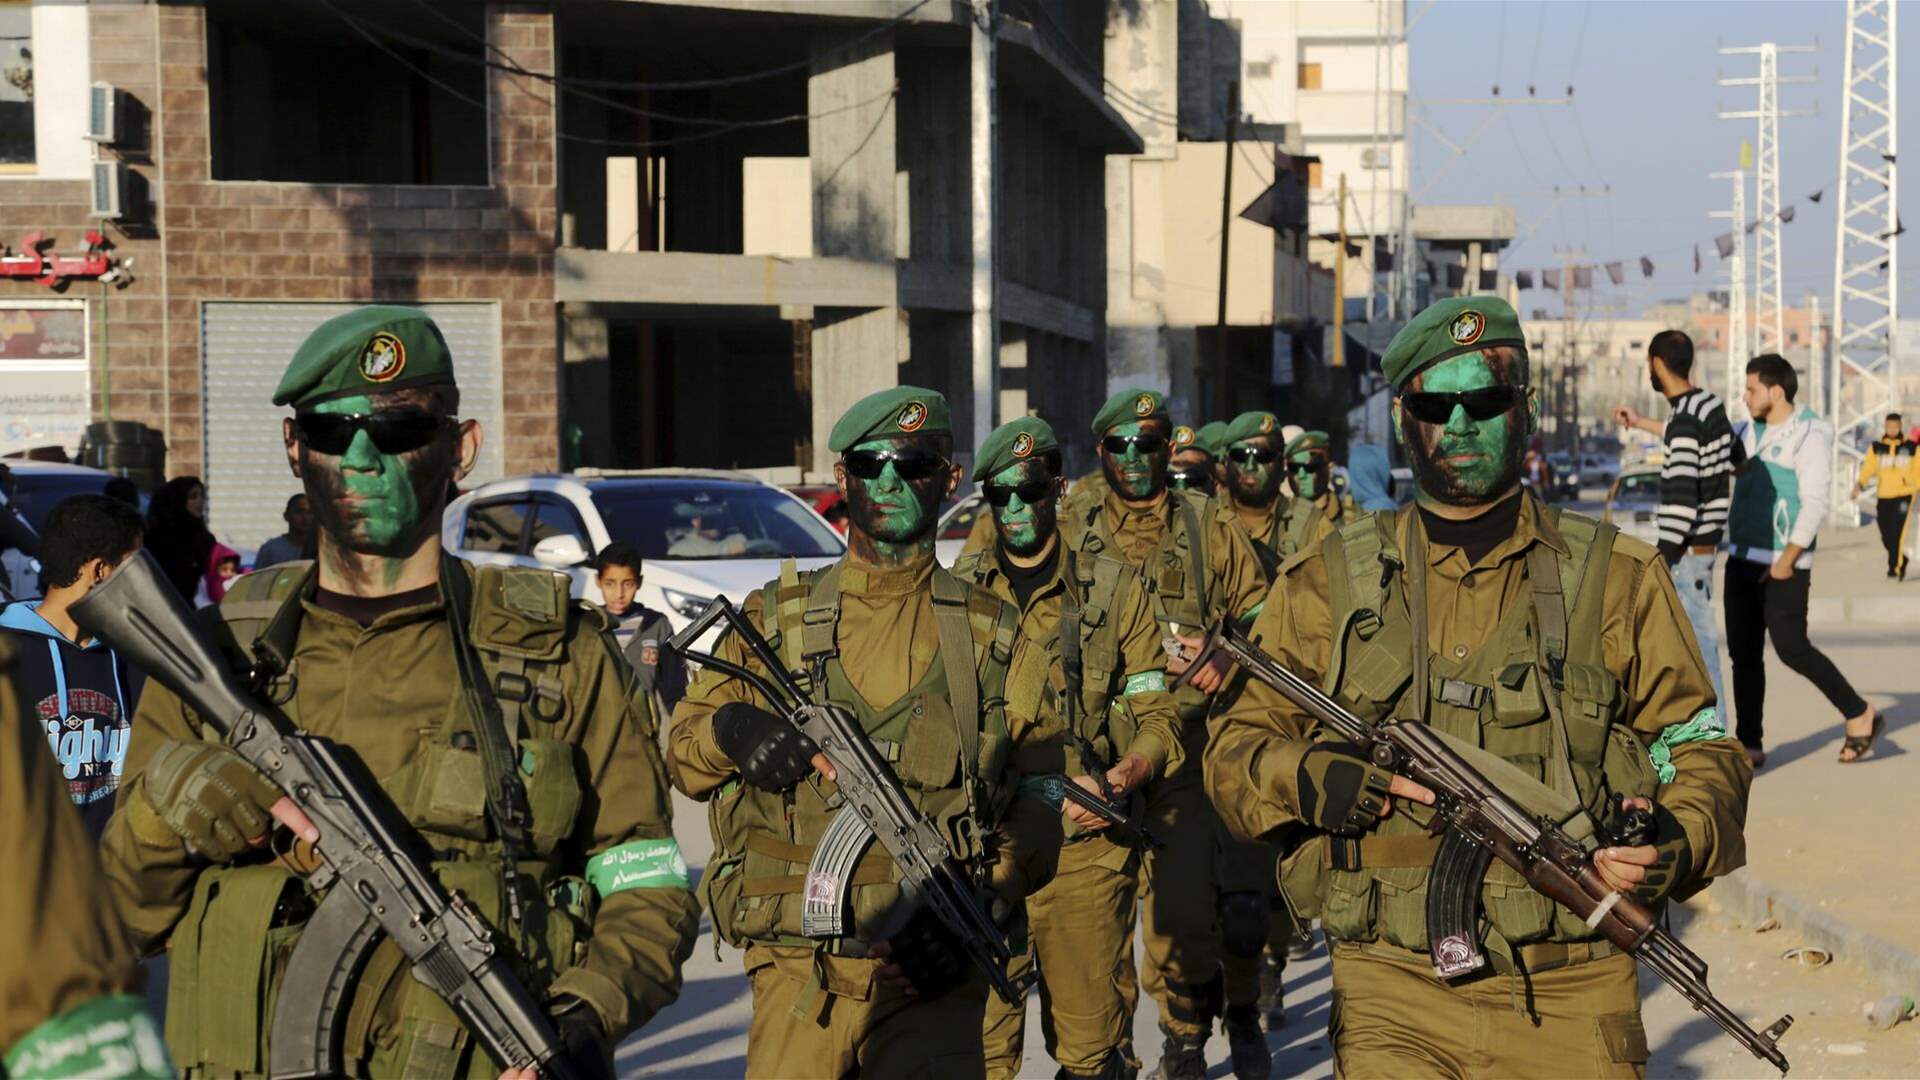 حماس: المعركة معركة الأمّة العربية والإسلامية وعلى الدول العربية والإسلامية مسؤولية مباشرة